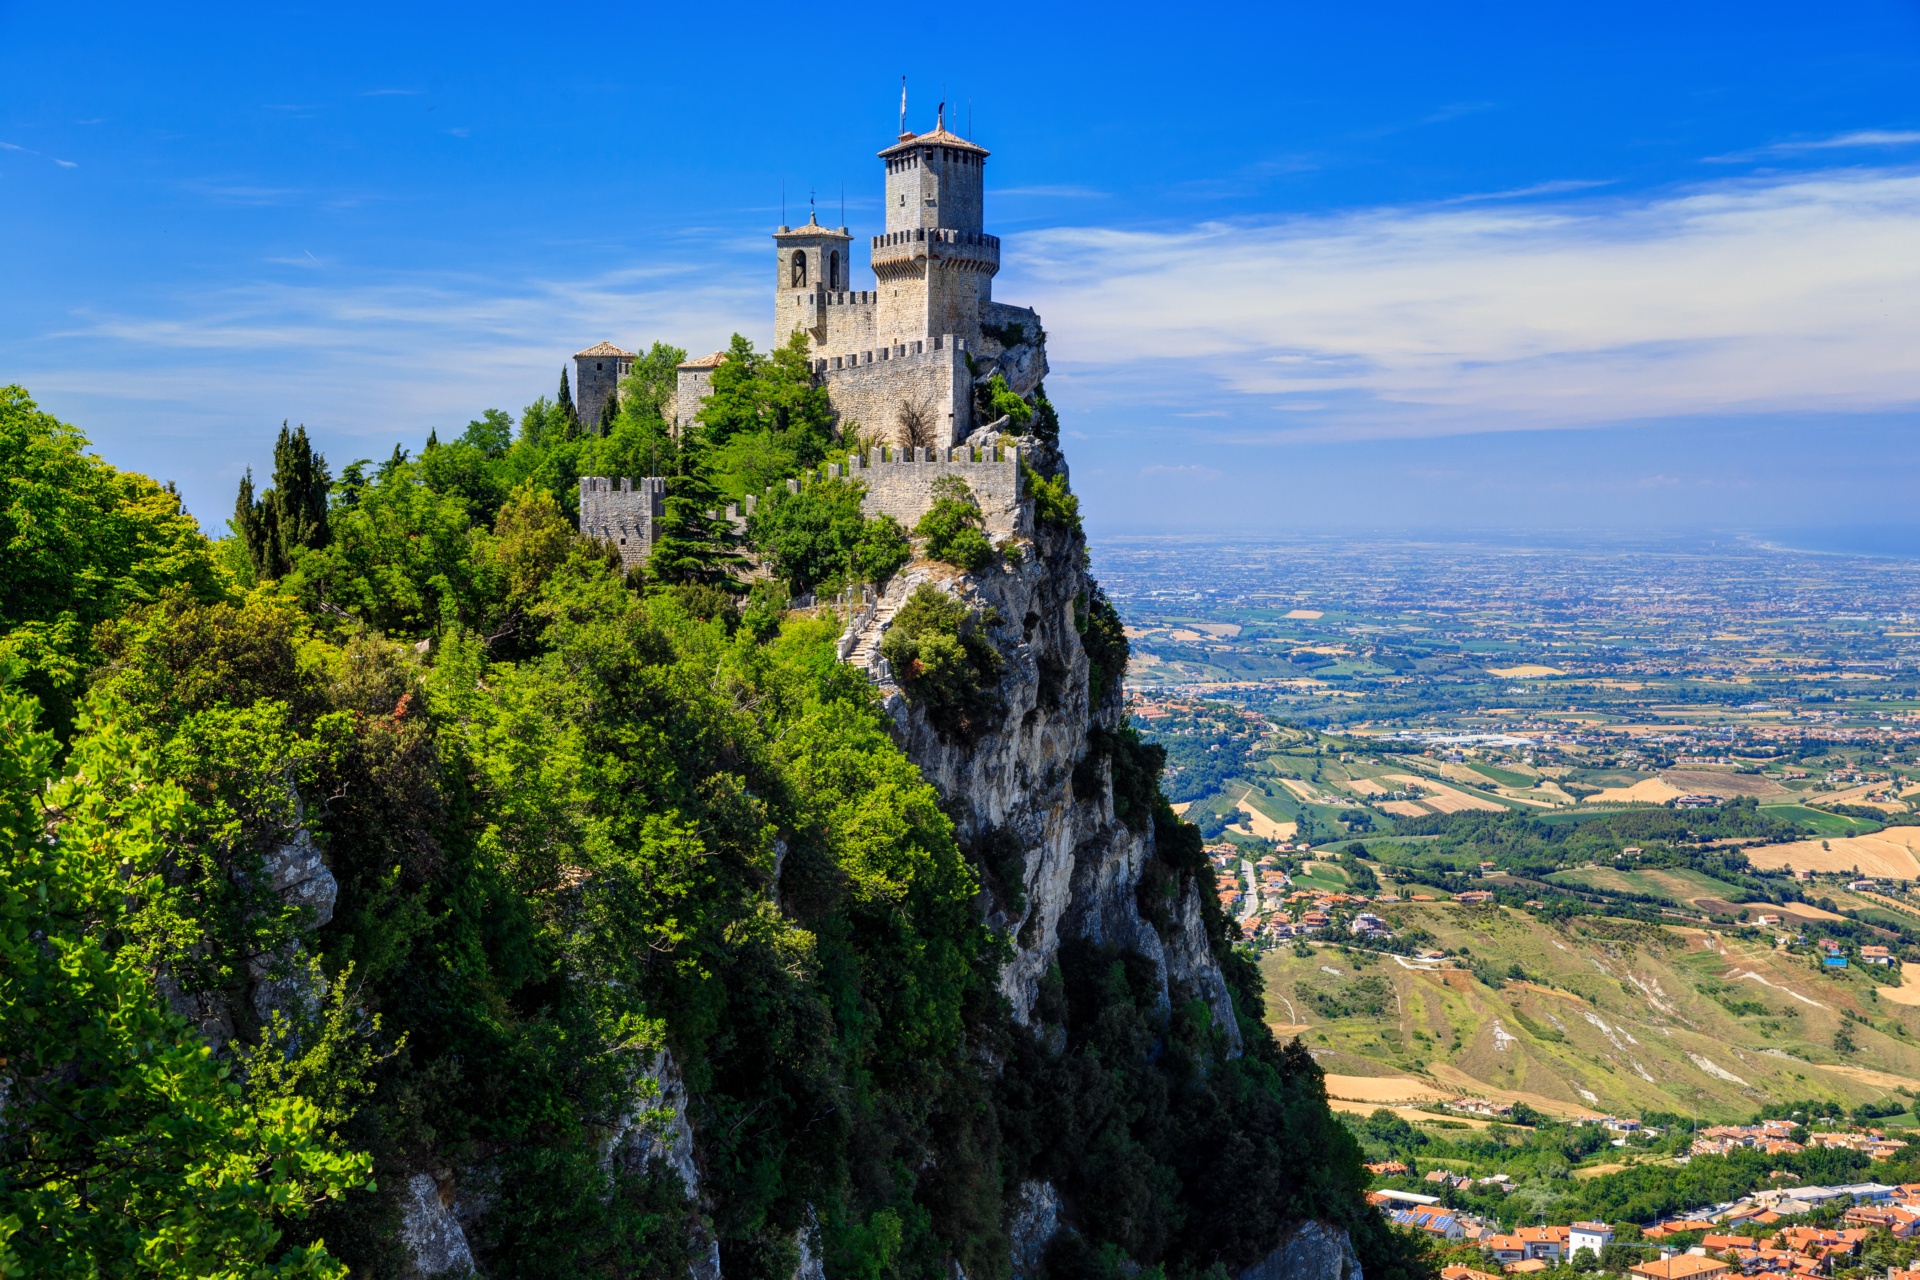 grad v San Marinu, ki se mogočno dviga na visoki skali